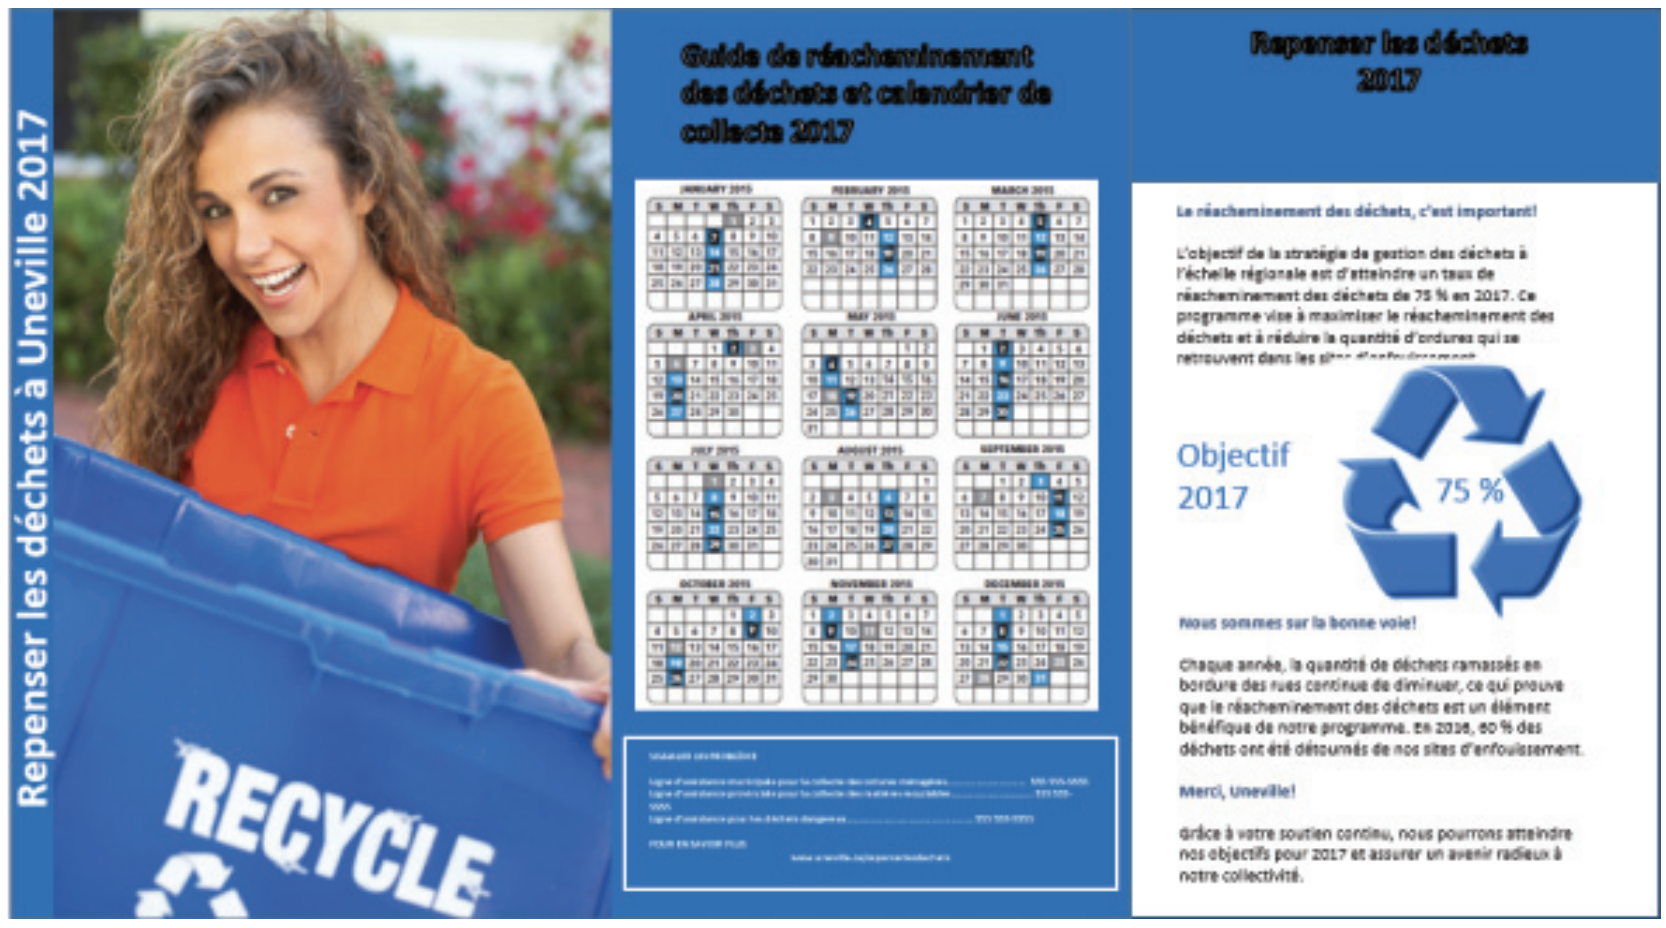 Exemple de calendrier de collecte des déchets de type promotionnel